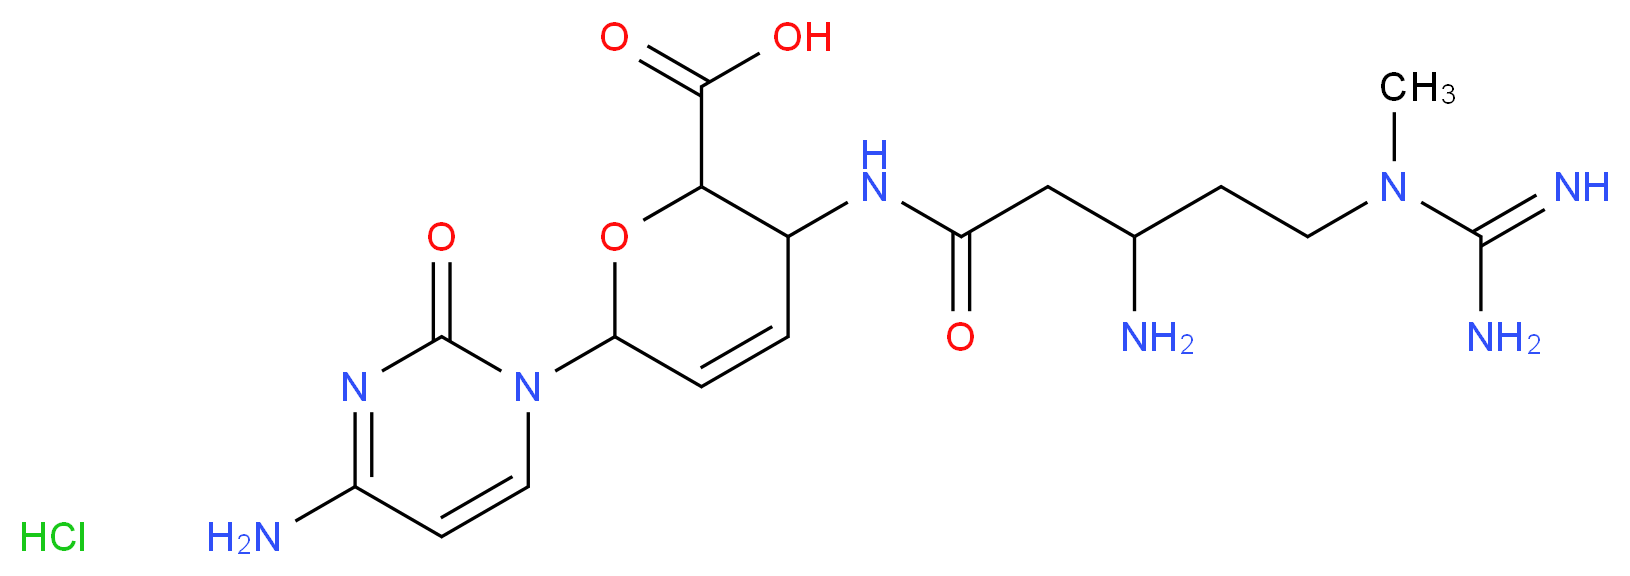 2079-00-7 molecular structure